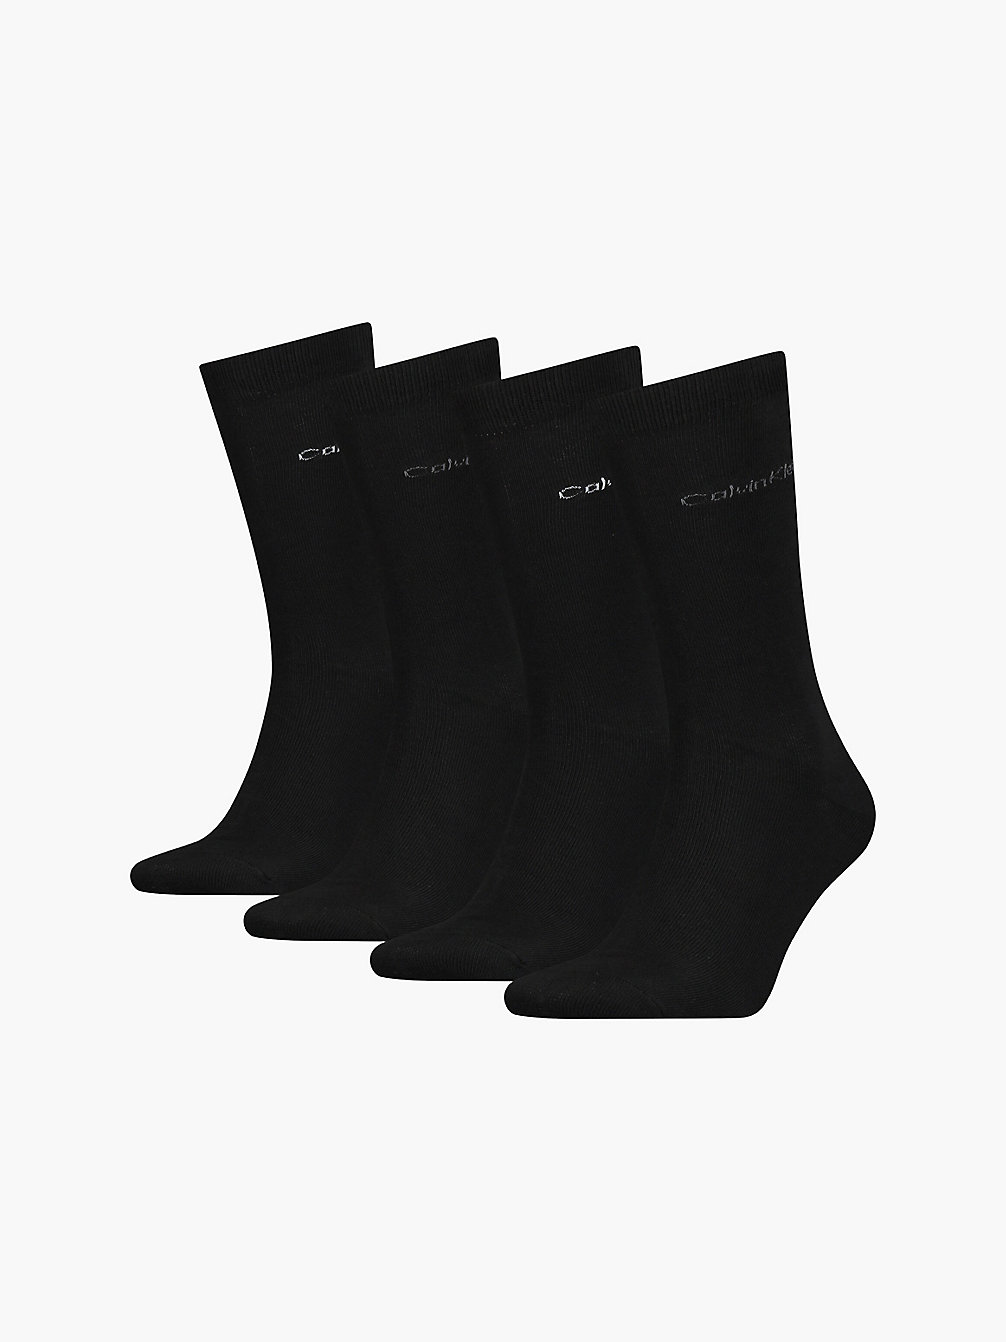 BLACK COMBO 4 Pack Crew Socks Gift Set undefined men Calvin Klein